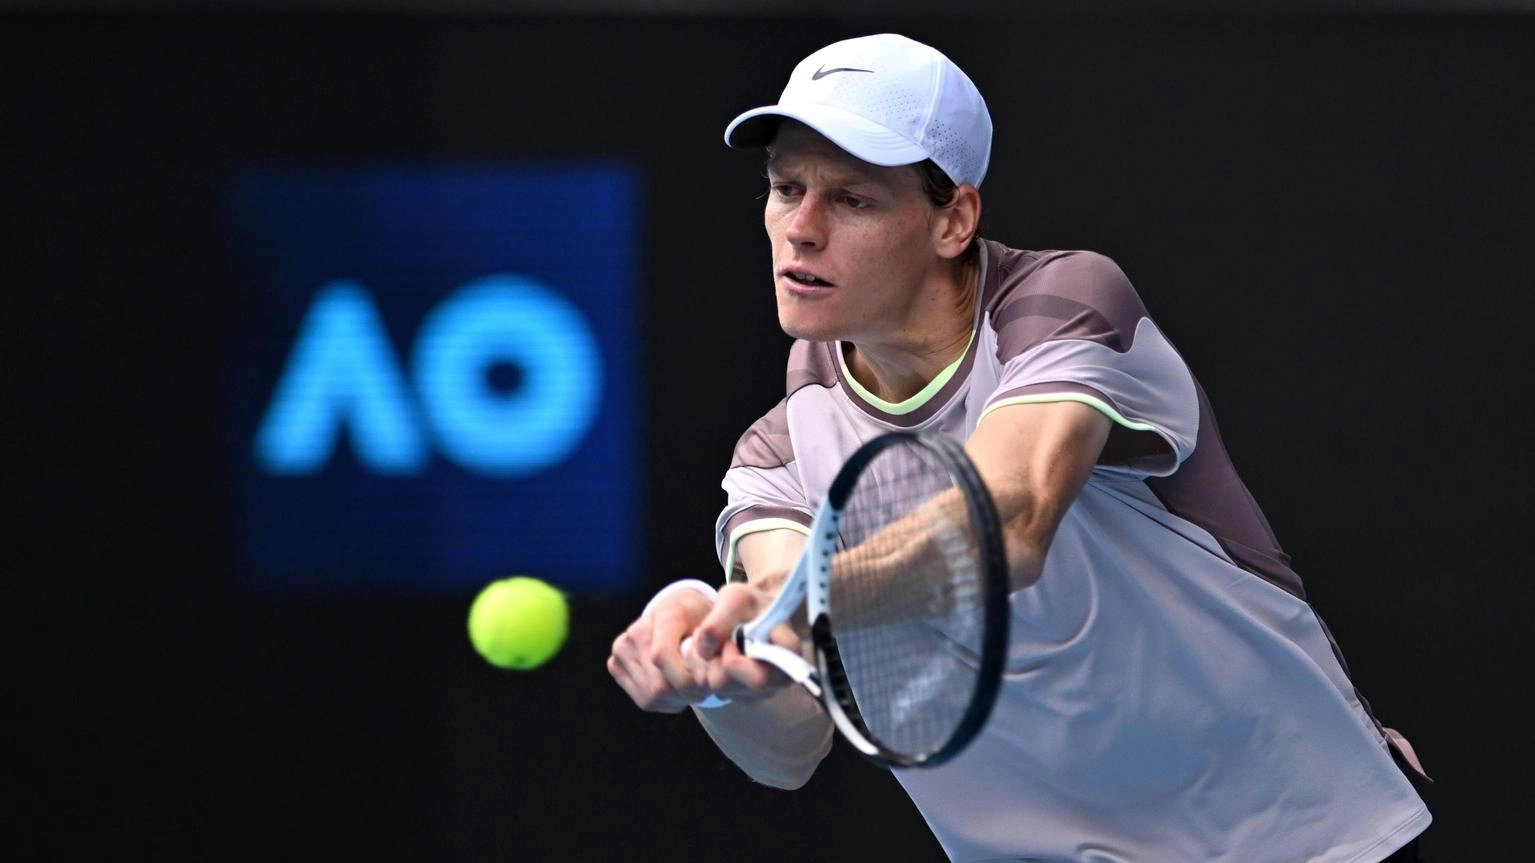 Australian Open: Sinner 'gara dura, ora i quarti con il sorriso'